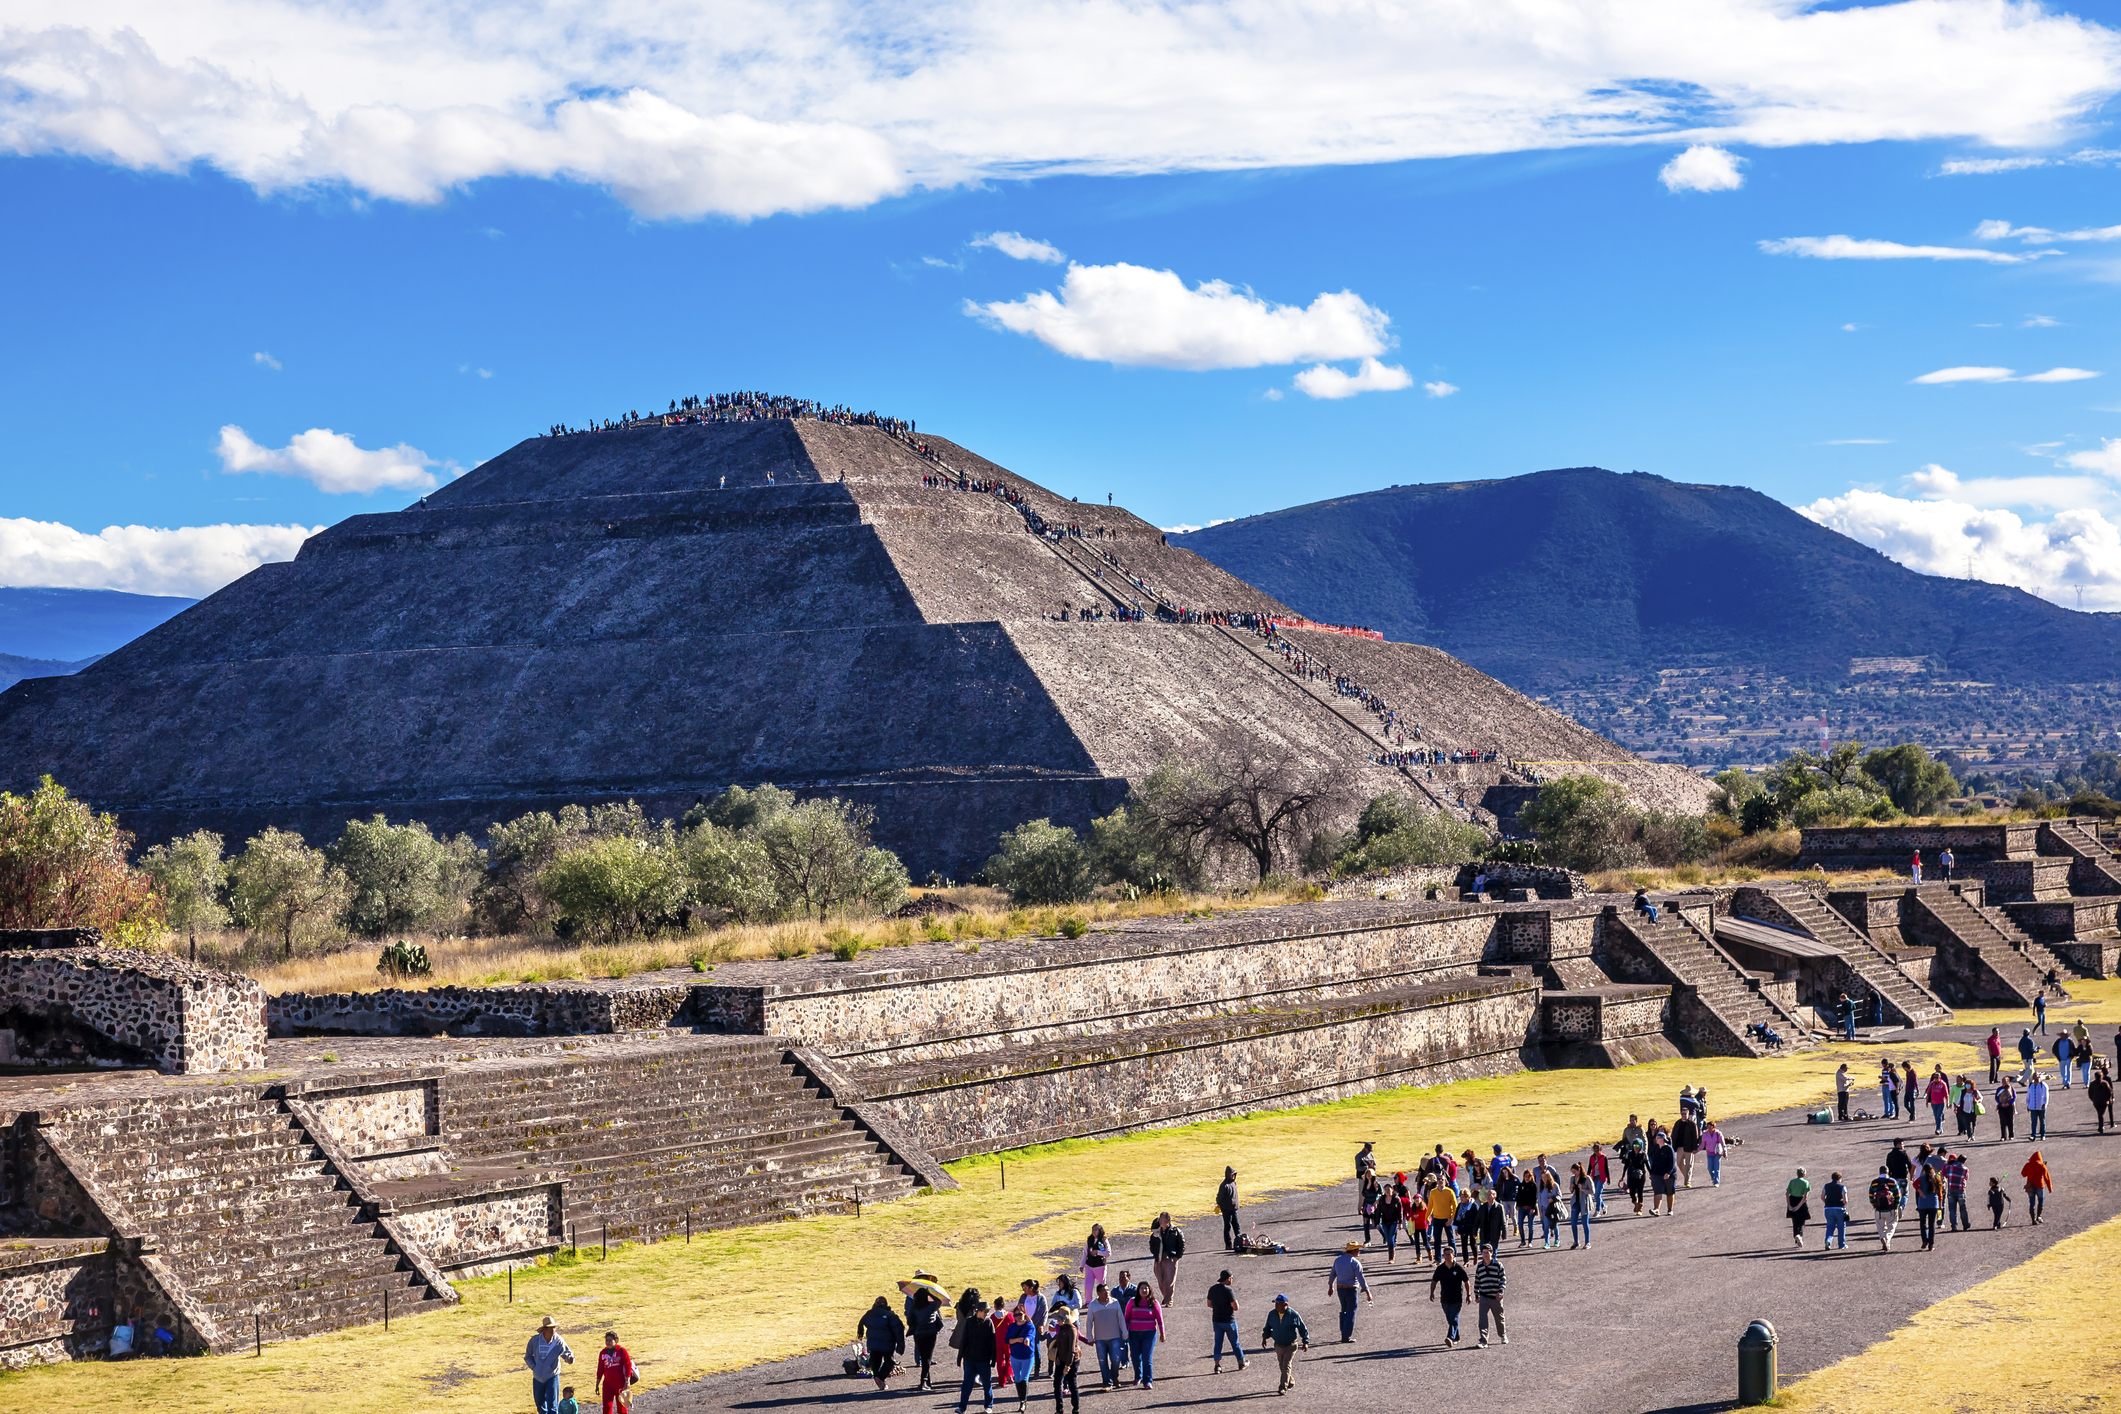 Теотиуакан е археологически обект в Мексико, който е разположен на 48 км североизточно от днешната столица град Мексико. В най-точен превод от науатл, името на града се произнася с ударение върху уа (Теотиуа́кан) и ще рече „Където боговете са сътворени“ или „Място на боговете“. В предколониално Мексико той е представлявал многолюден град, културно-икономически и култово-религиозен център. Основан е около I век пр.н.е. от неизвестни индиански племена. По неизвестни причини градът е напуснат и става необитаем през IX век. 3 века по-късно е „преоткрит“ от ацтеките, които използват храмовия комплекс за култови ритуали.